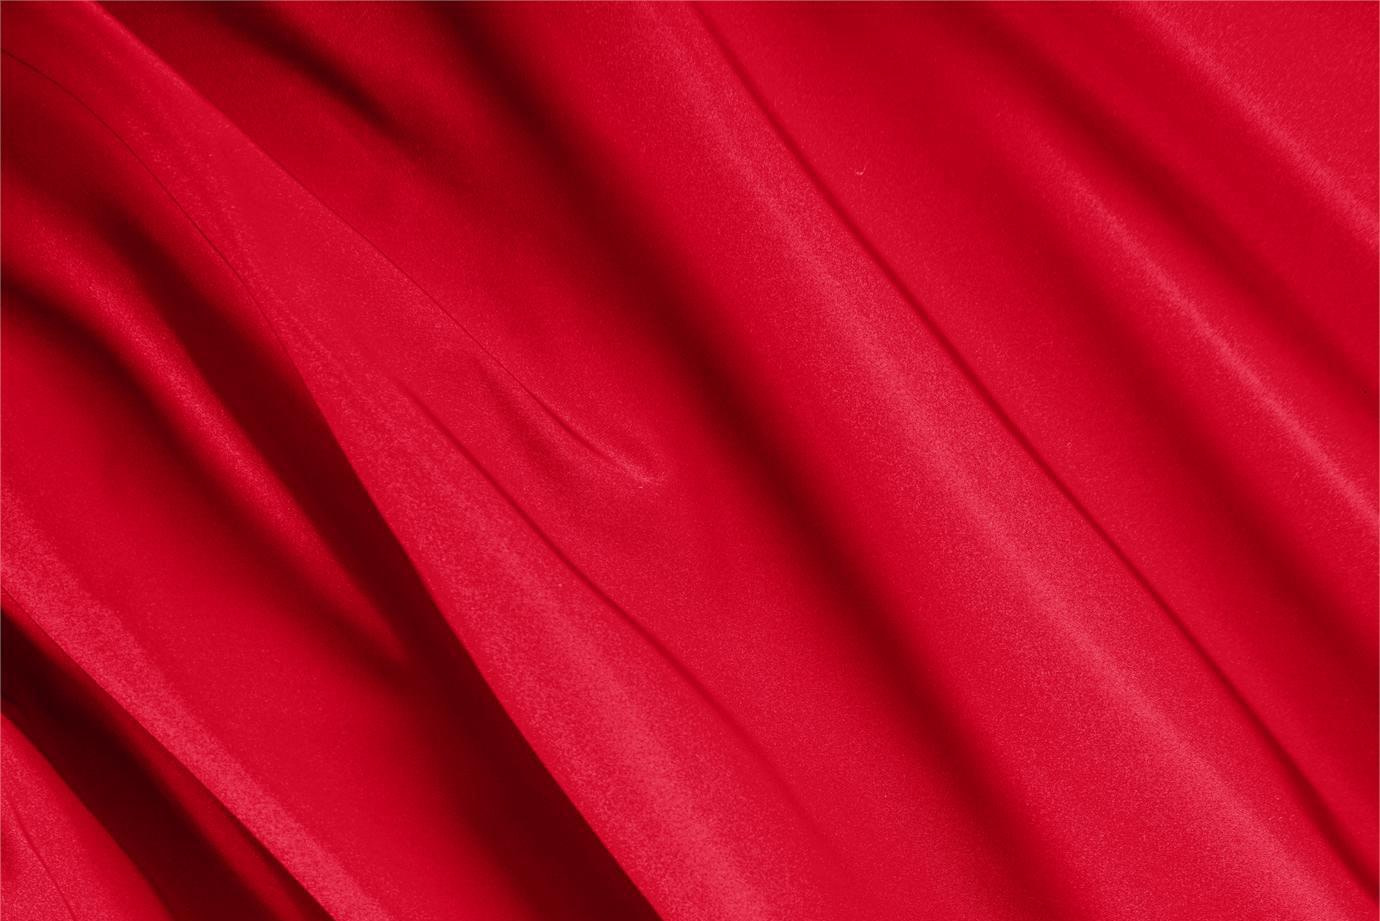 Tessuto Radzemire Rosso Fuoco in Seta per abbigliamento